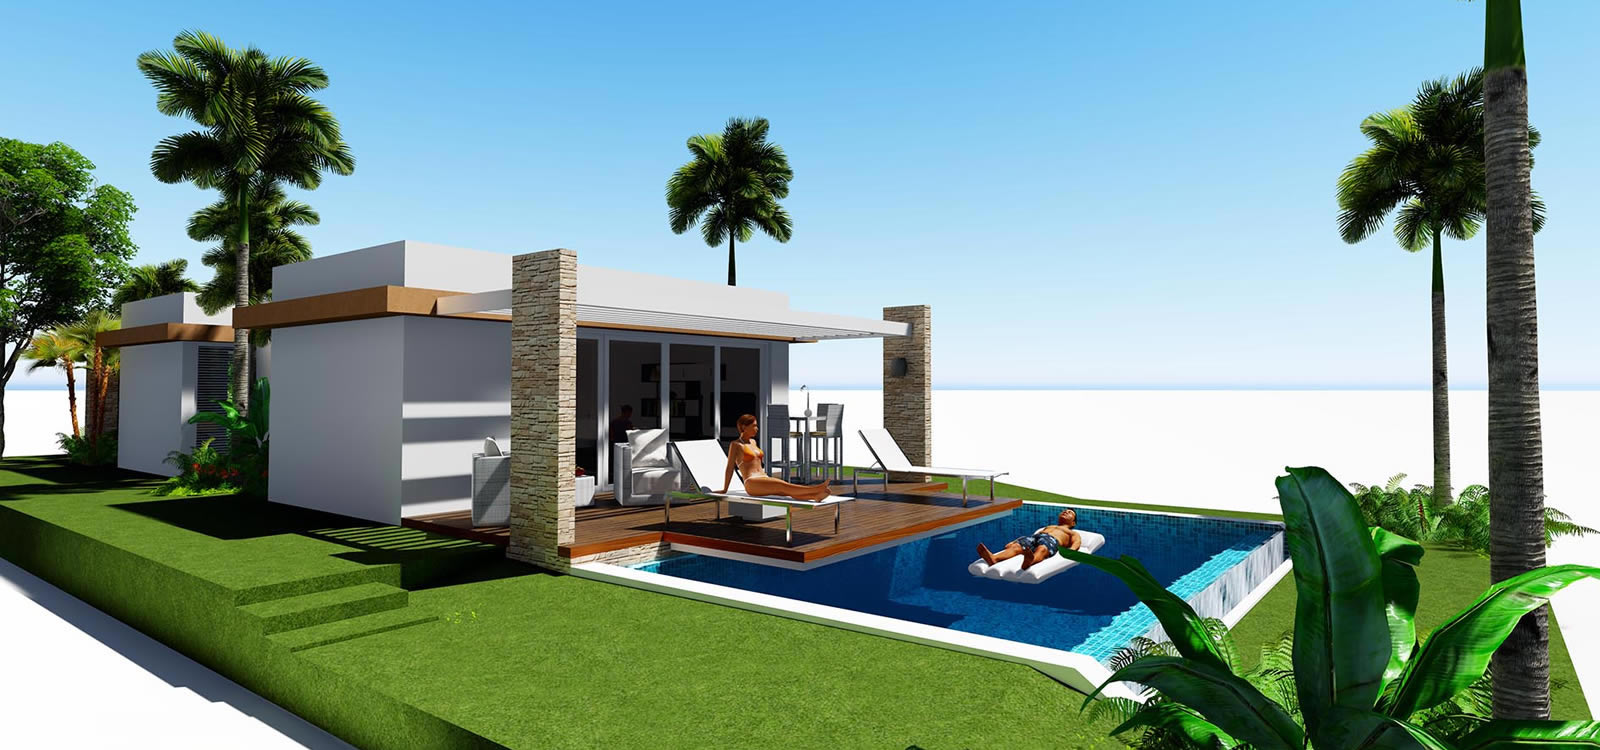 1 Bedroom Villas For Sale In Beach Resort Bayahibe Dominican Republic